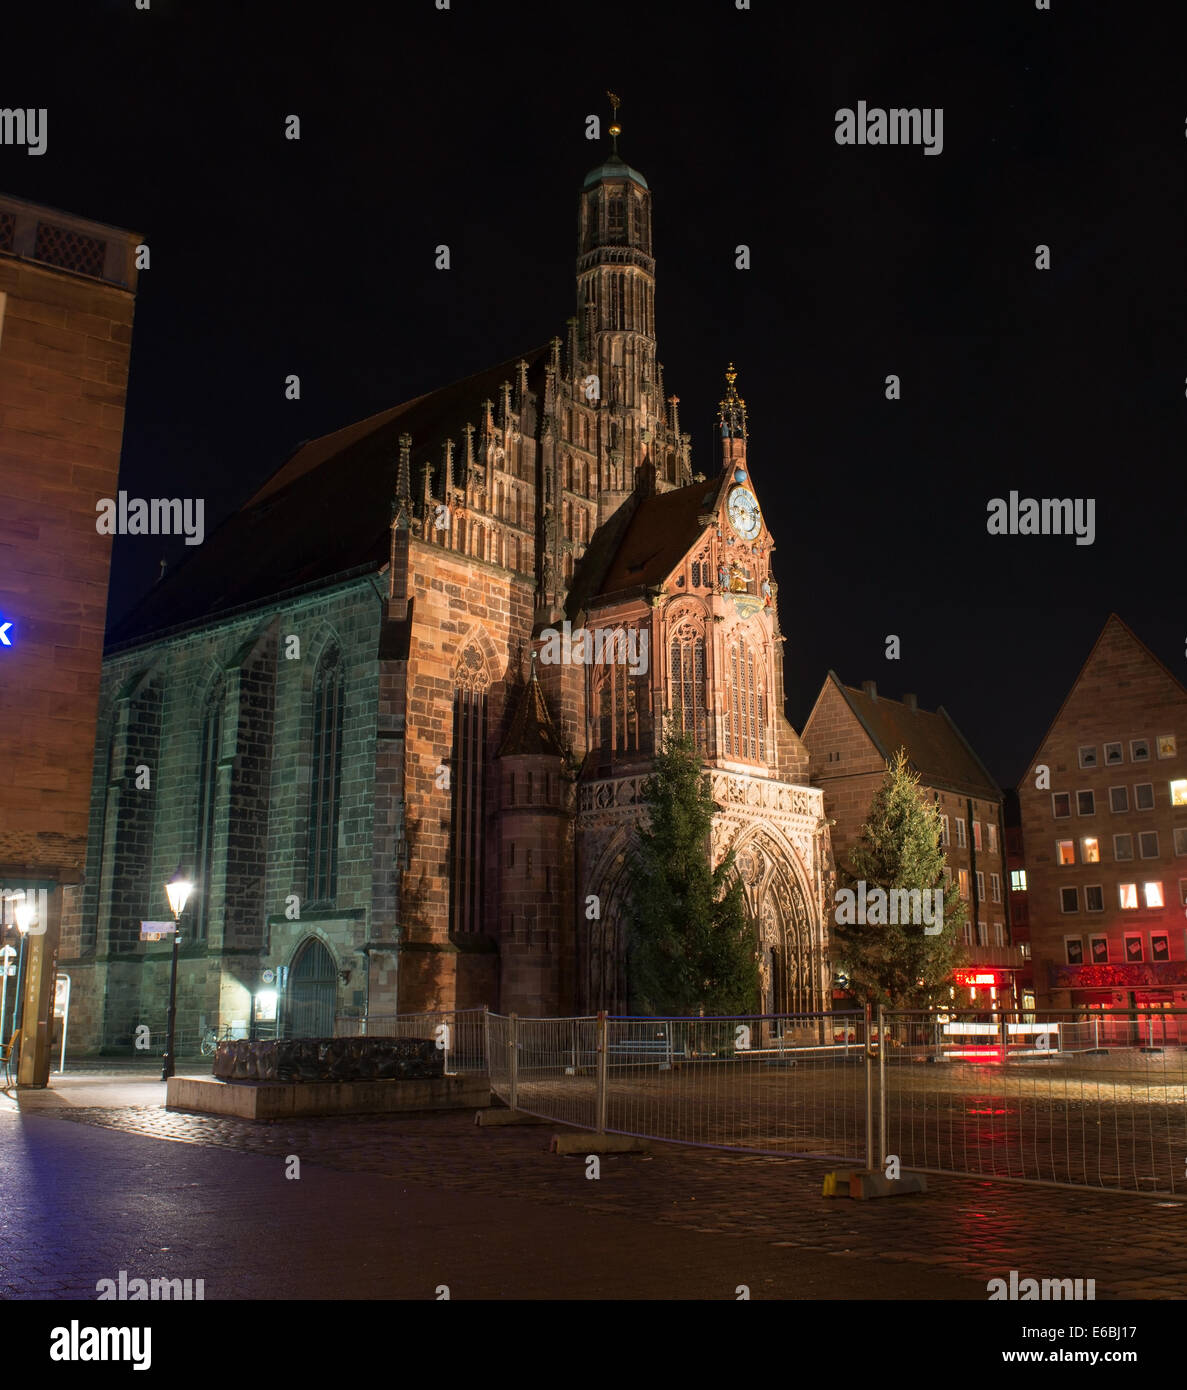 Vue sur l'église Frauenkirche (Eglise) suis la Hauptmarkt de nuit à Nuremberg, Allemagne Banque D'Images